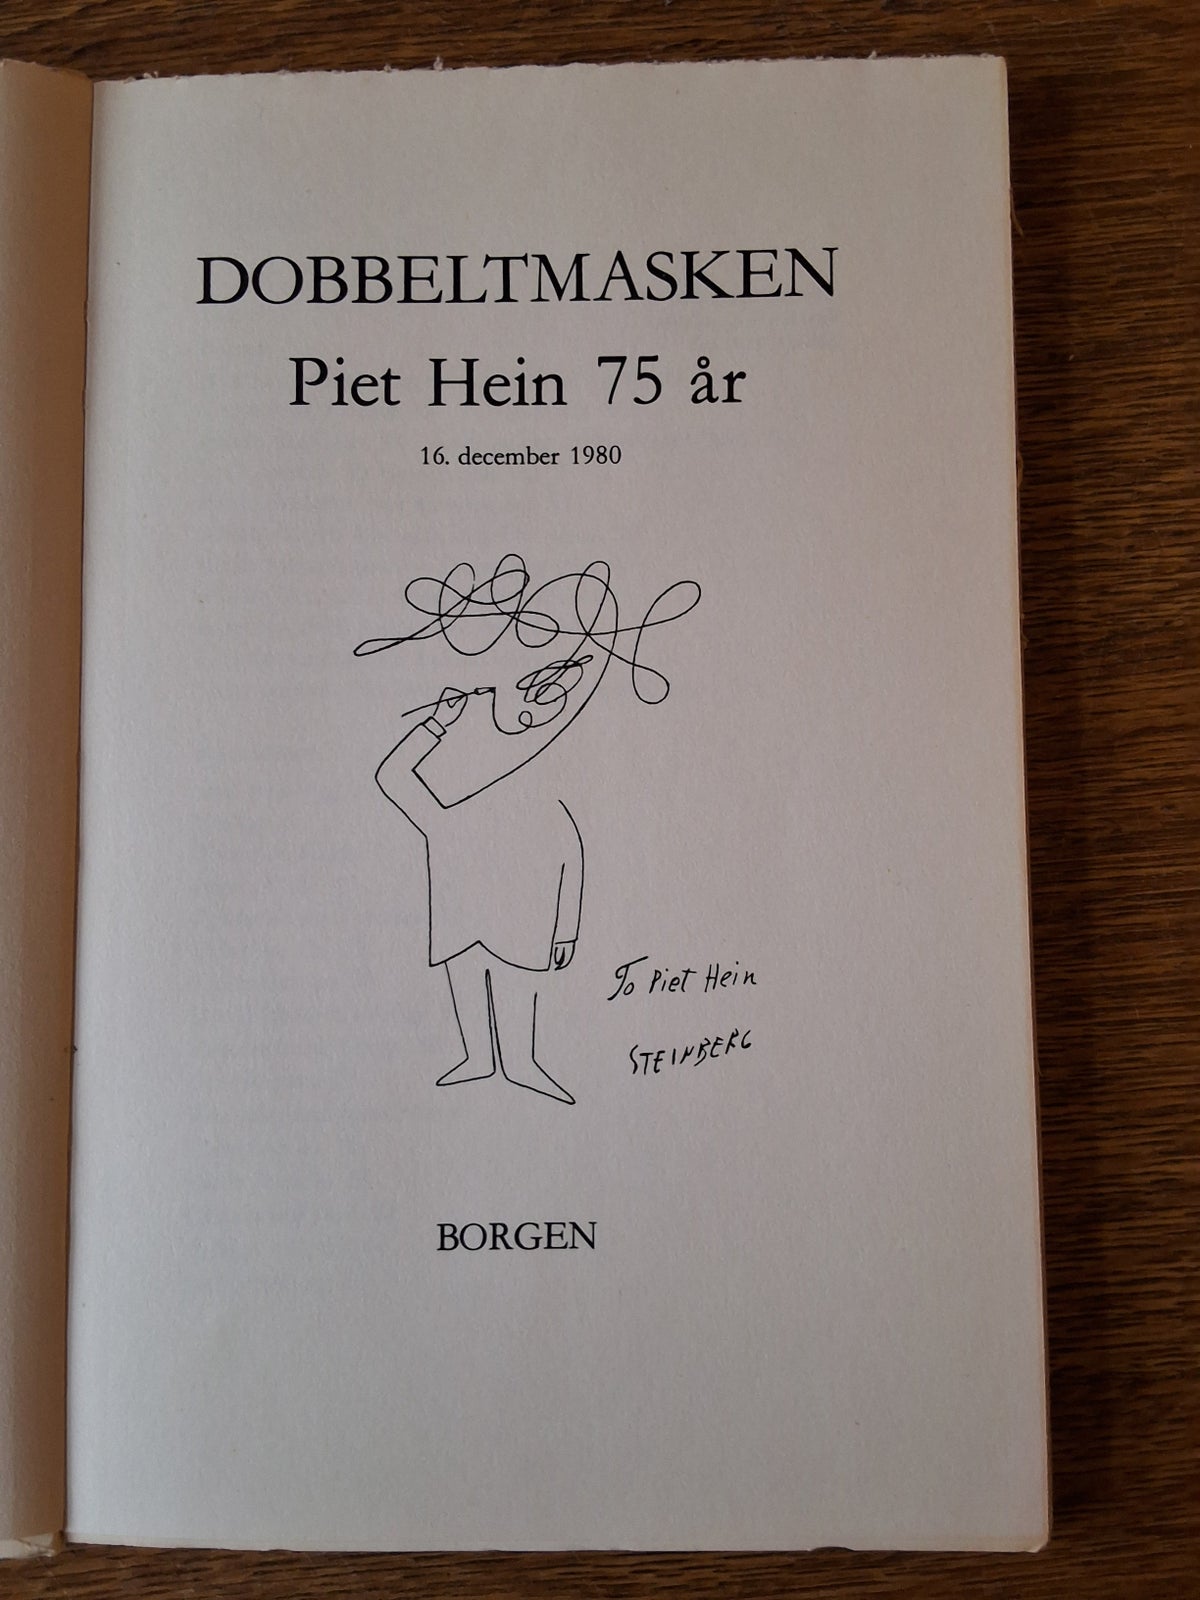 DOBBELTMASKEN, Piet Hein